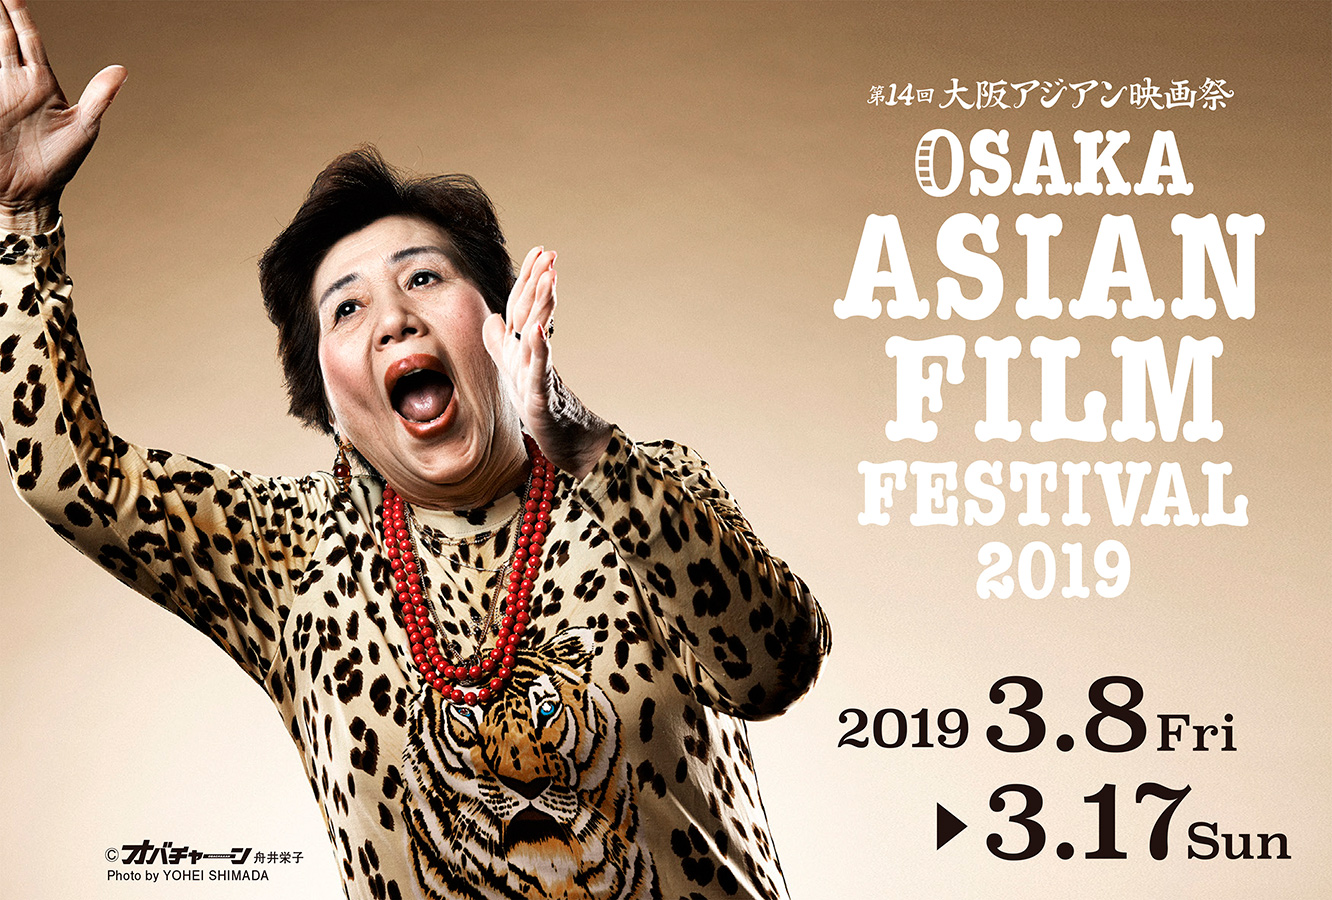 Osaka-Asian-Film-Festival-Poster